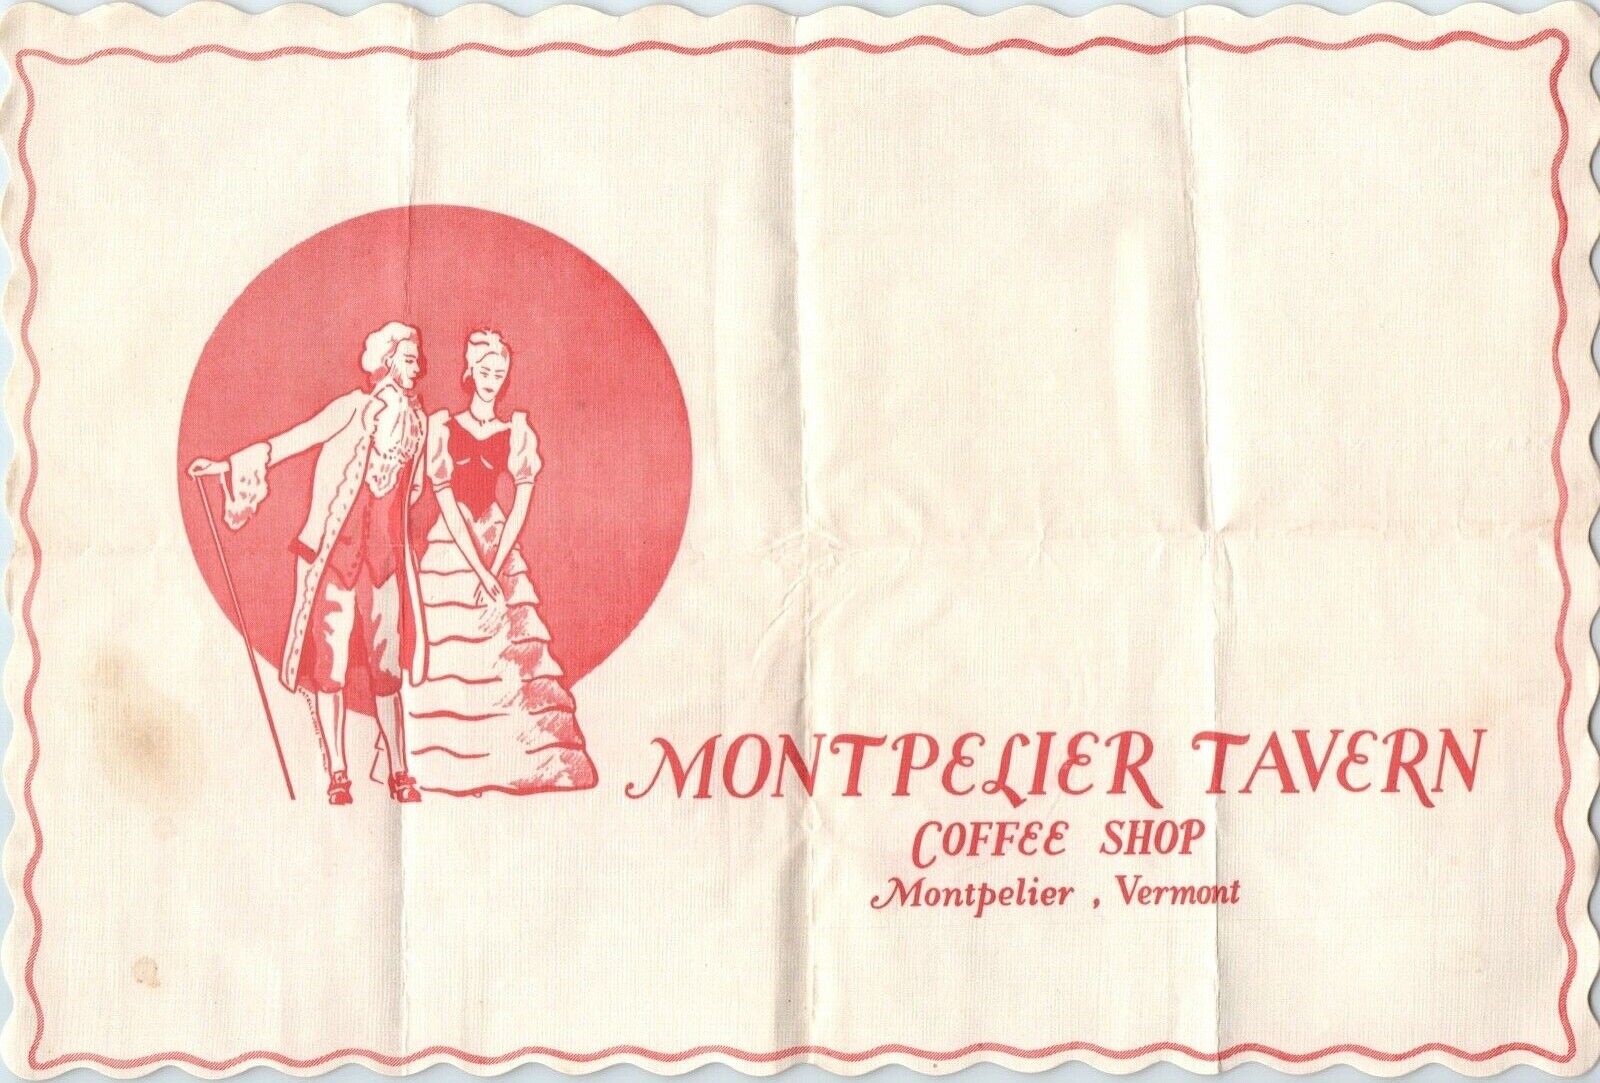 Montpelier Tavern Coffee Shop Place Mat 1938 Montpelier, Vermont -E9E-44